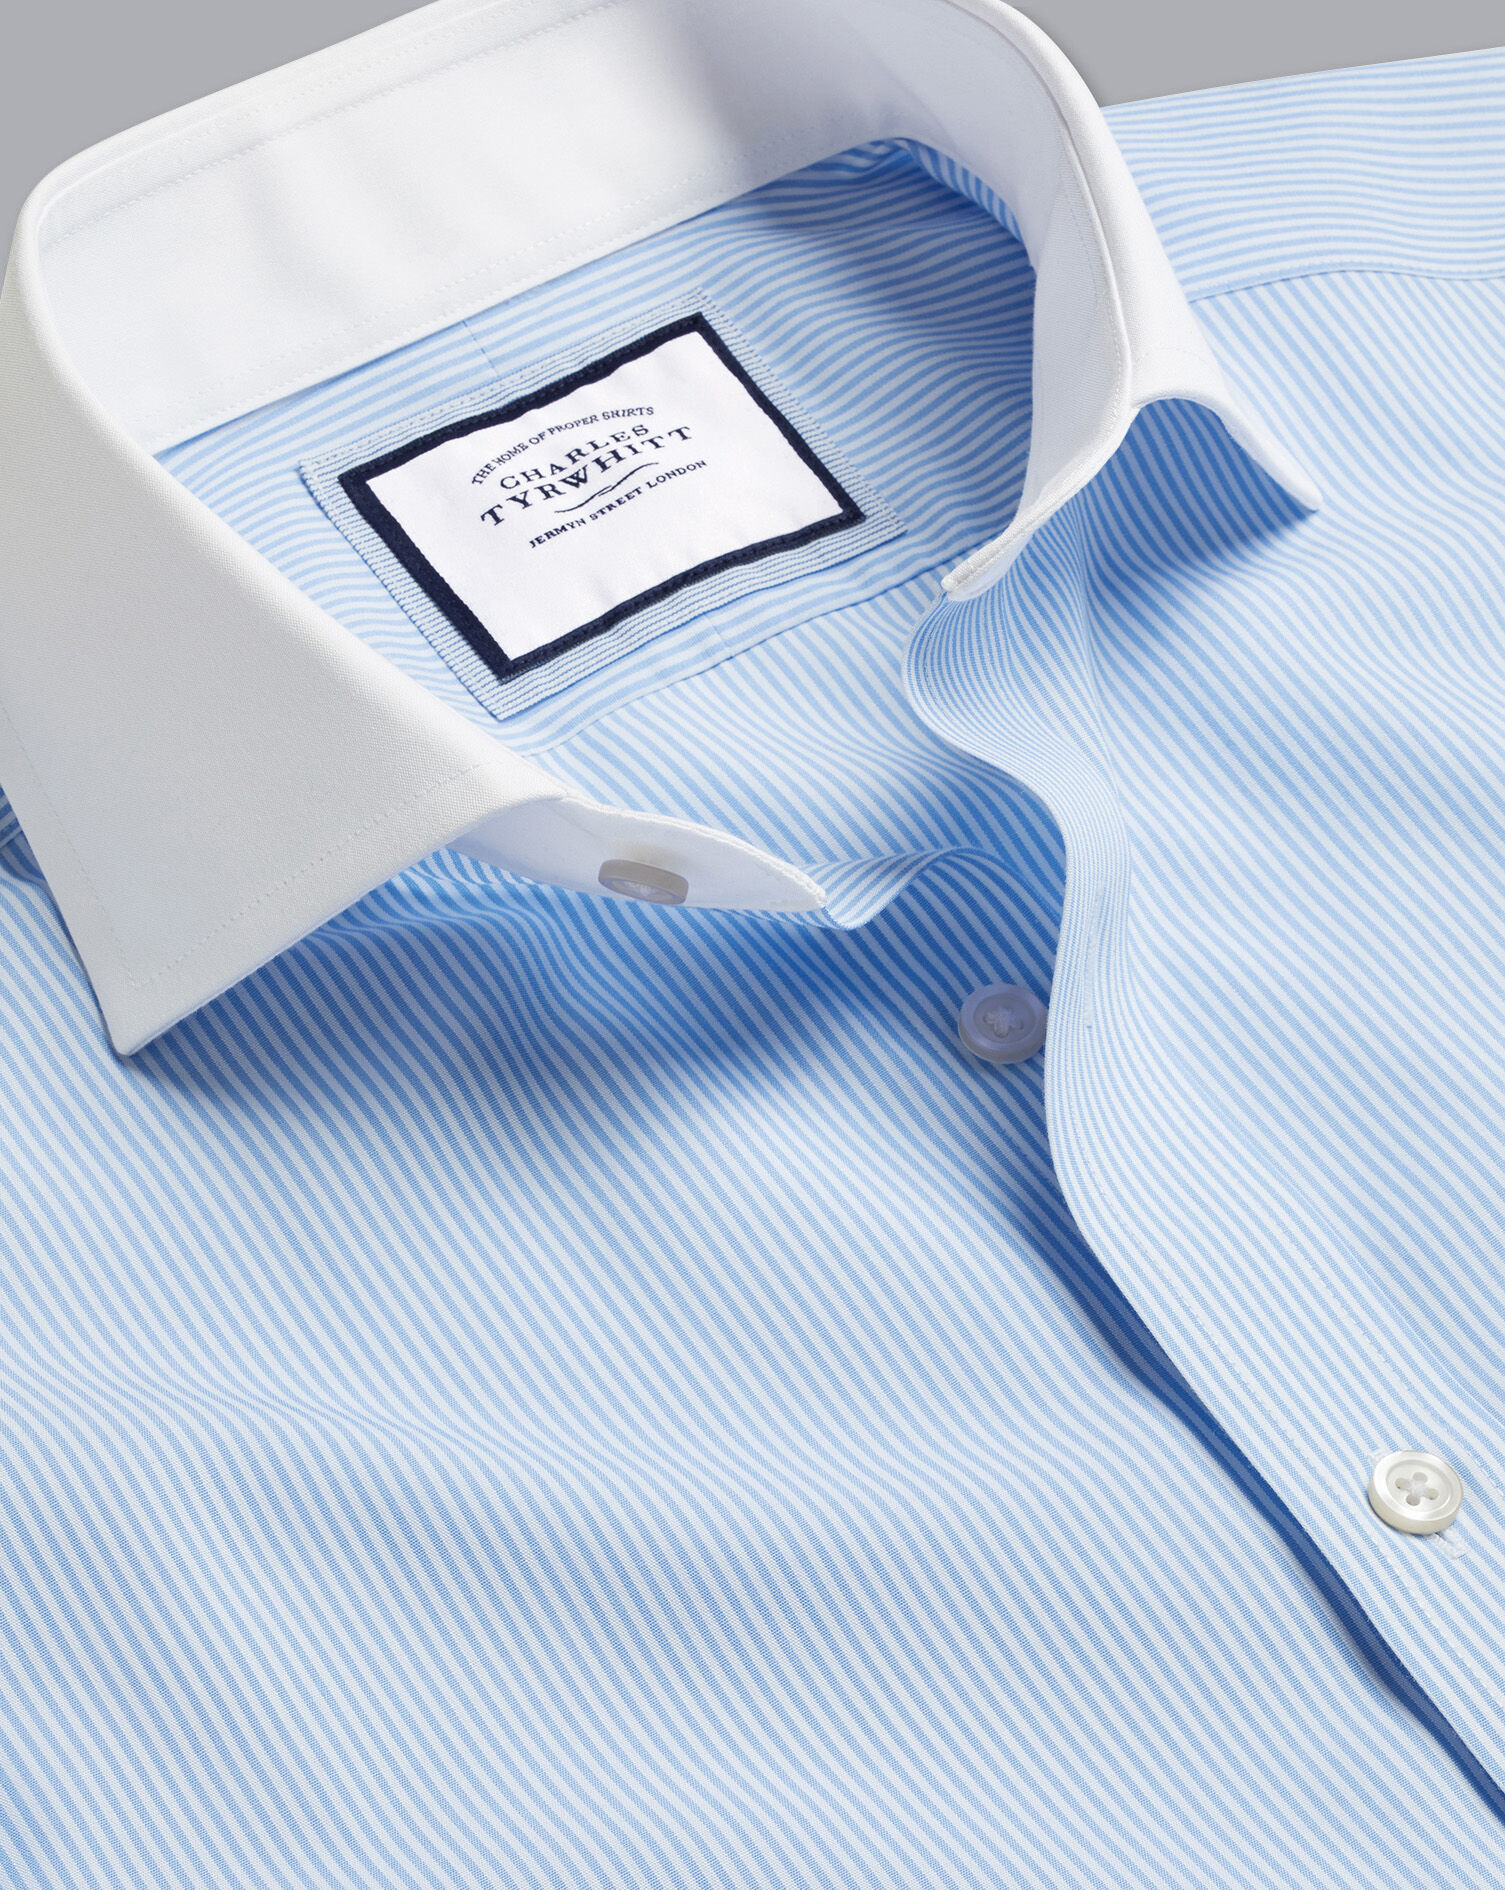 Charles Tyrwhitt Charles Tyrwhitt 100% Cotton Striped Shirt Light Blue Size 15.5 Slimfit 